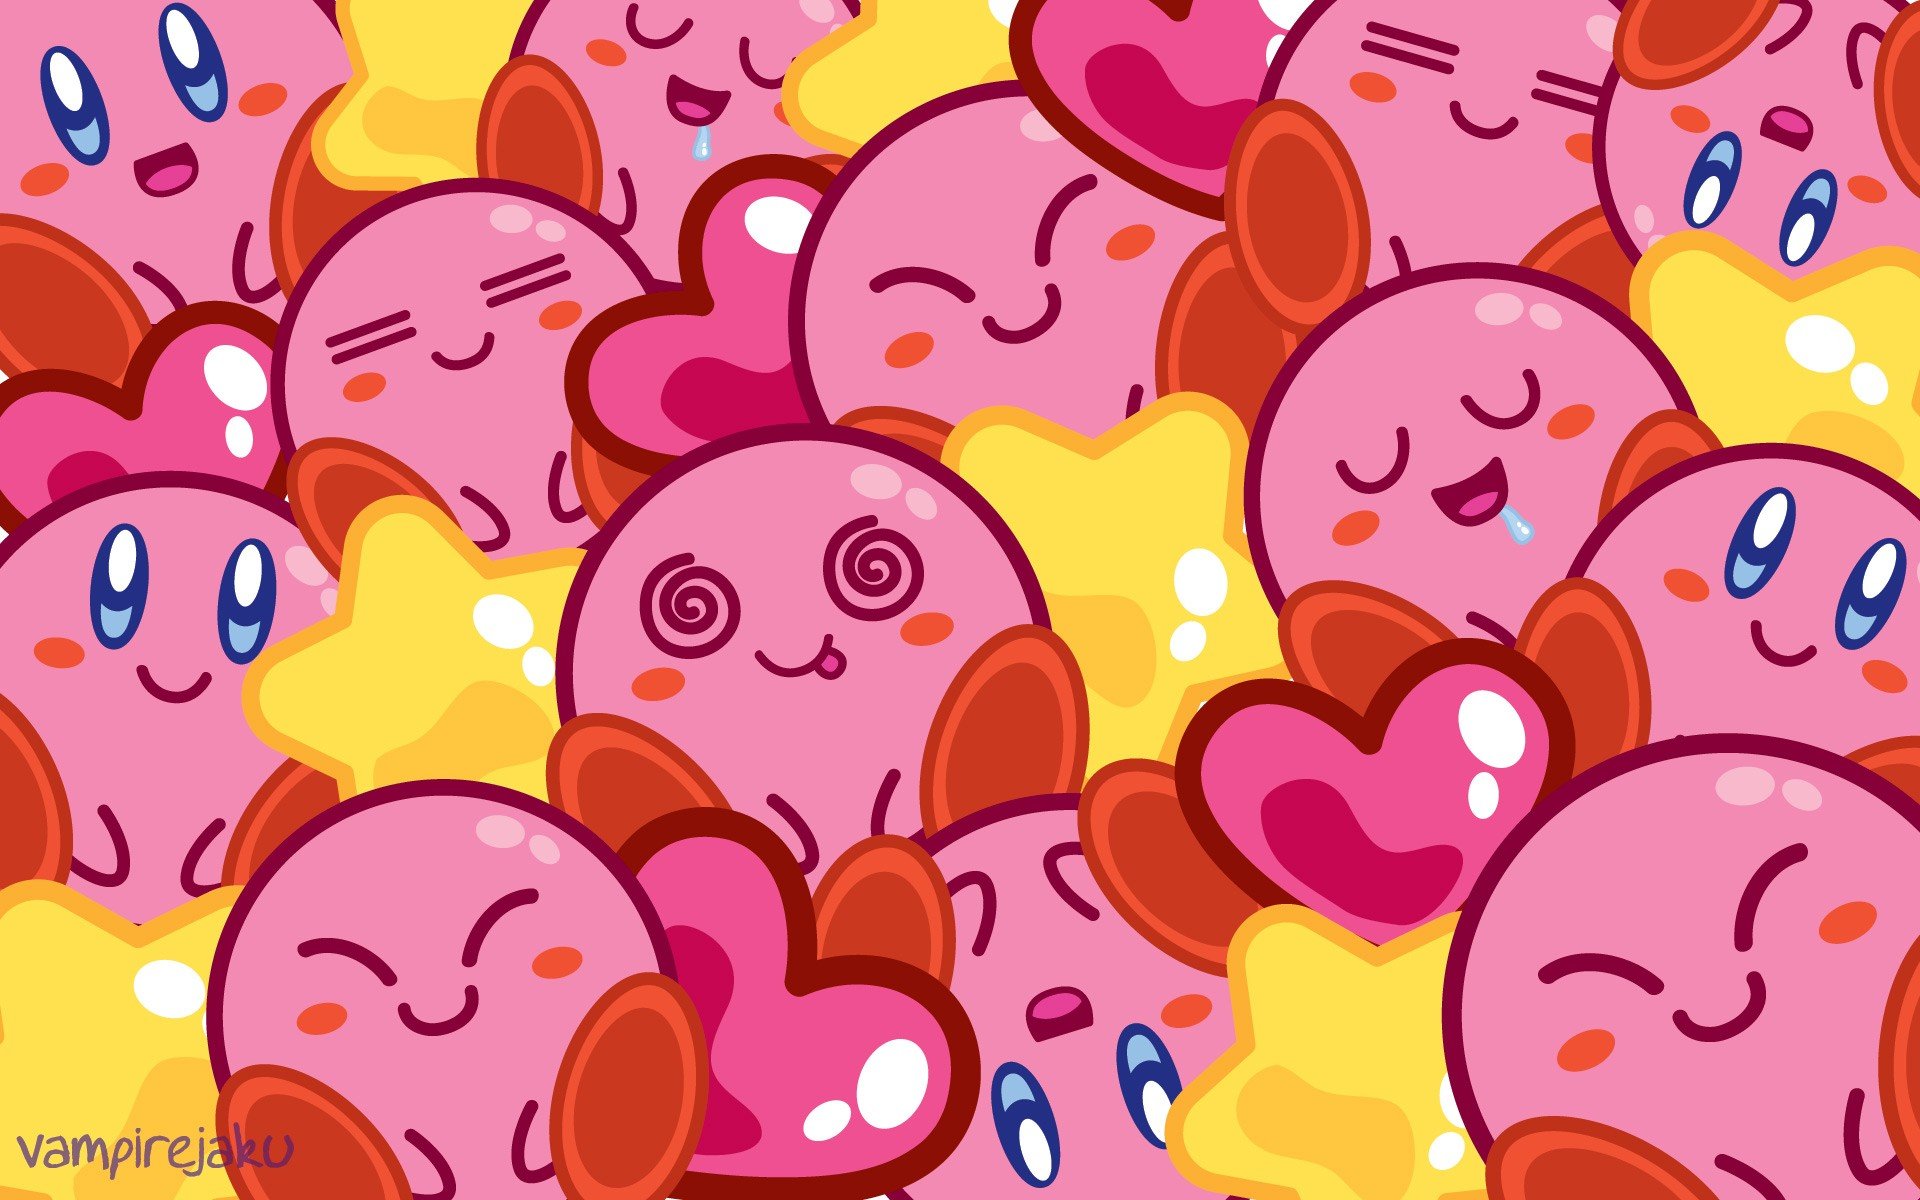 Tải miễn phí hình nền Kirby chất lượng cao và trang trí cho điện thoại của mình với những bức ảnh đầy màu sắc. Với đủ các phiên bản kute và đáng yêu, bạn sẽ có nhiều sự lựa chọn cho mỗi lần đổi hình nền. Bắt đầu thực hiện ngay hôm nay để cảm nhận sự khác biệt!